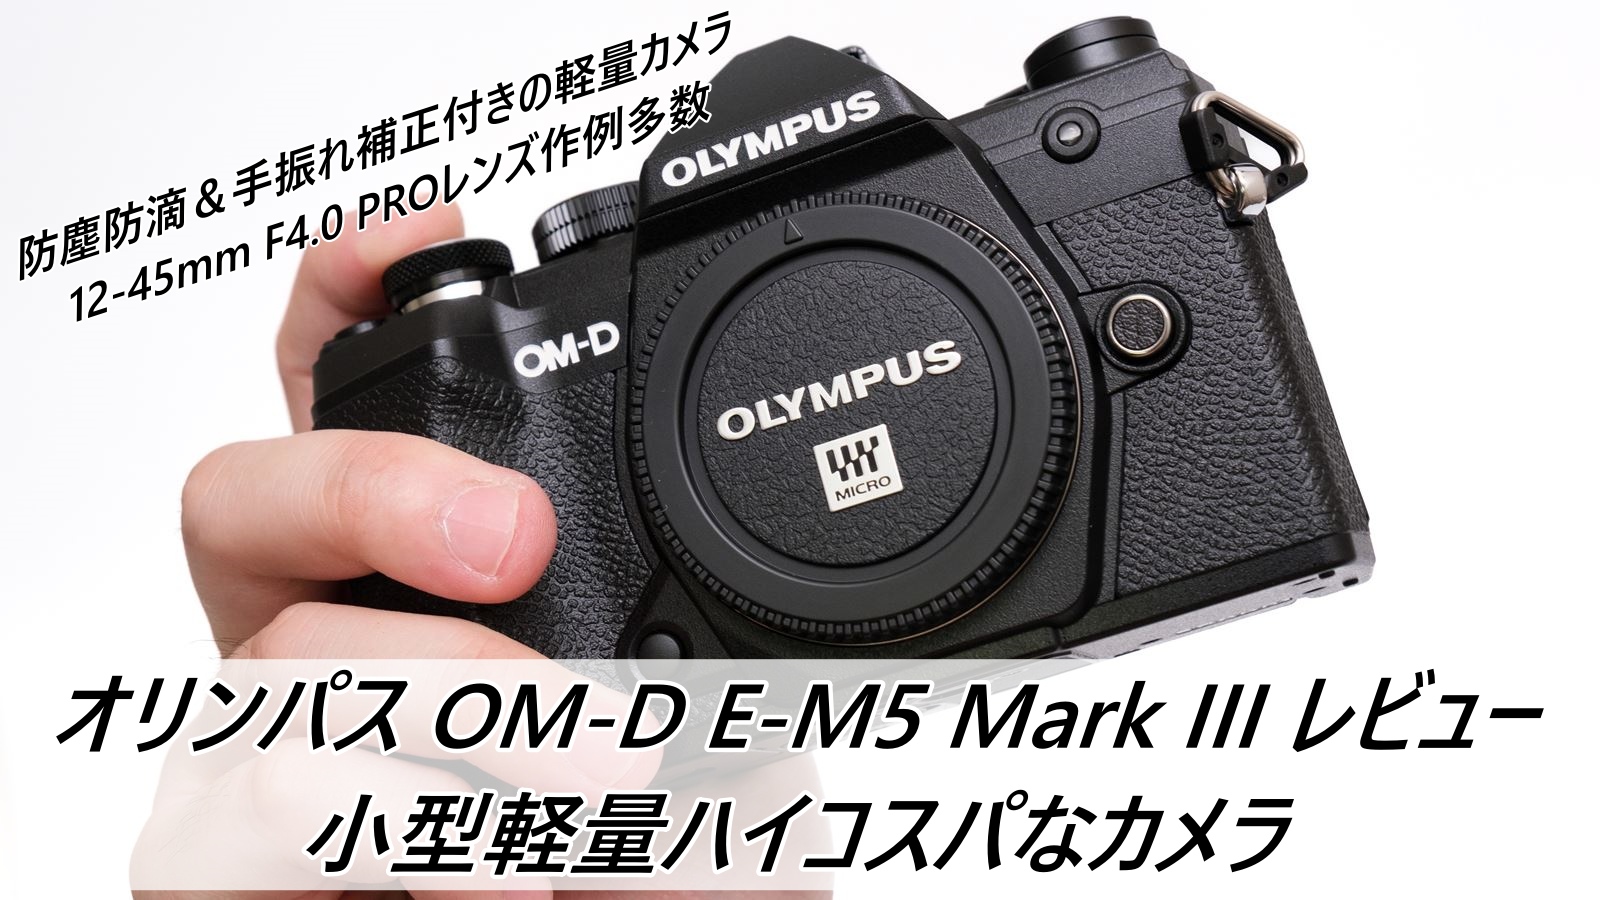 オリンパス OM-D E-M5 Mark III レビュー 小型軽量ハイコスパなカメラ 